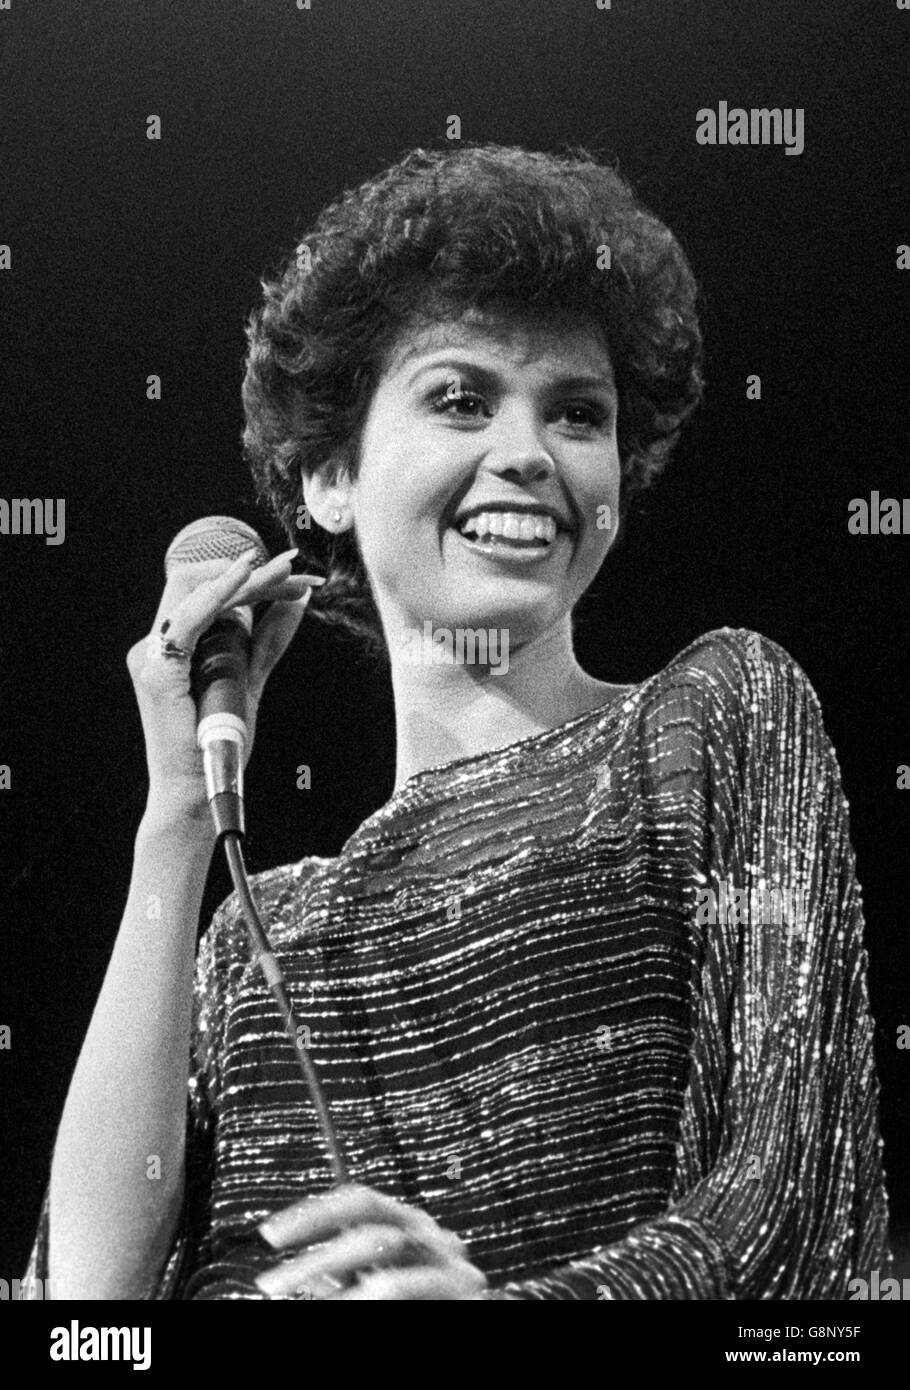 Marie Osmond - Singer, Actress, Host